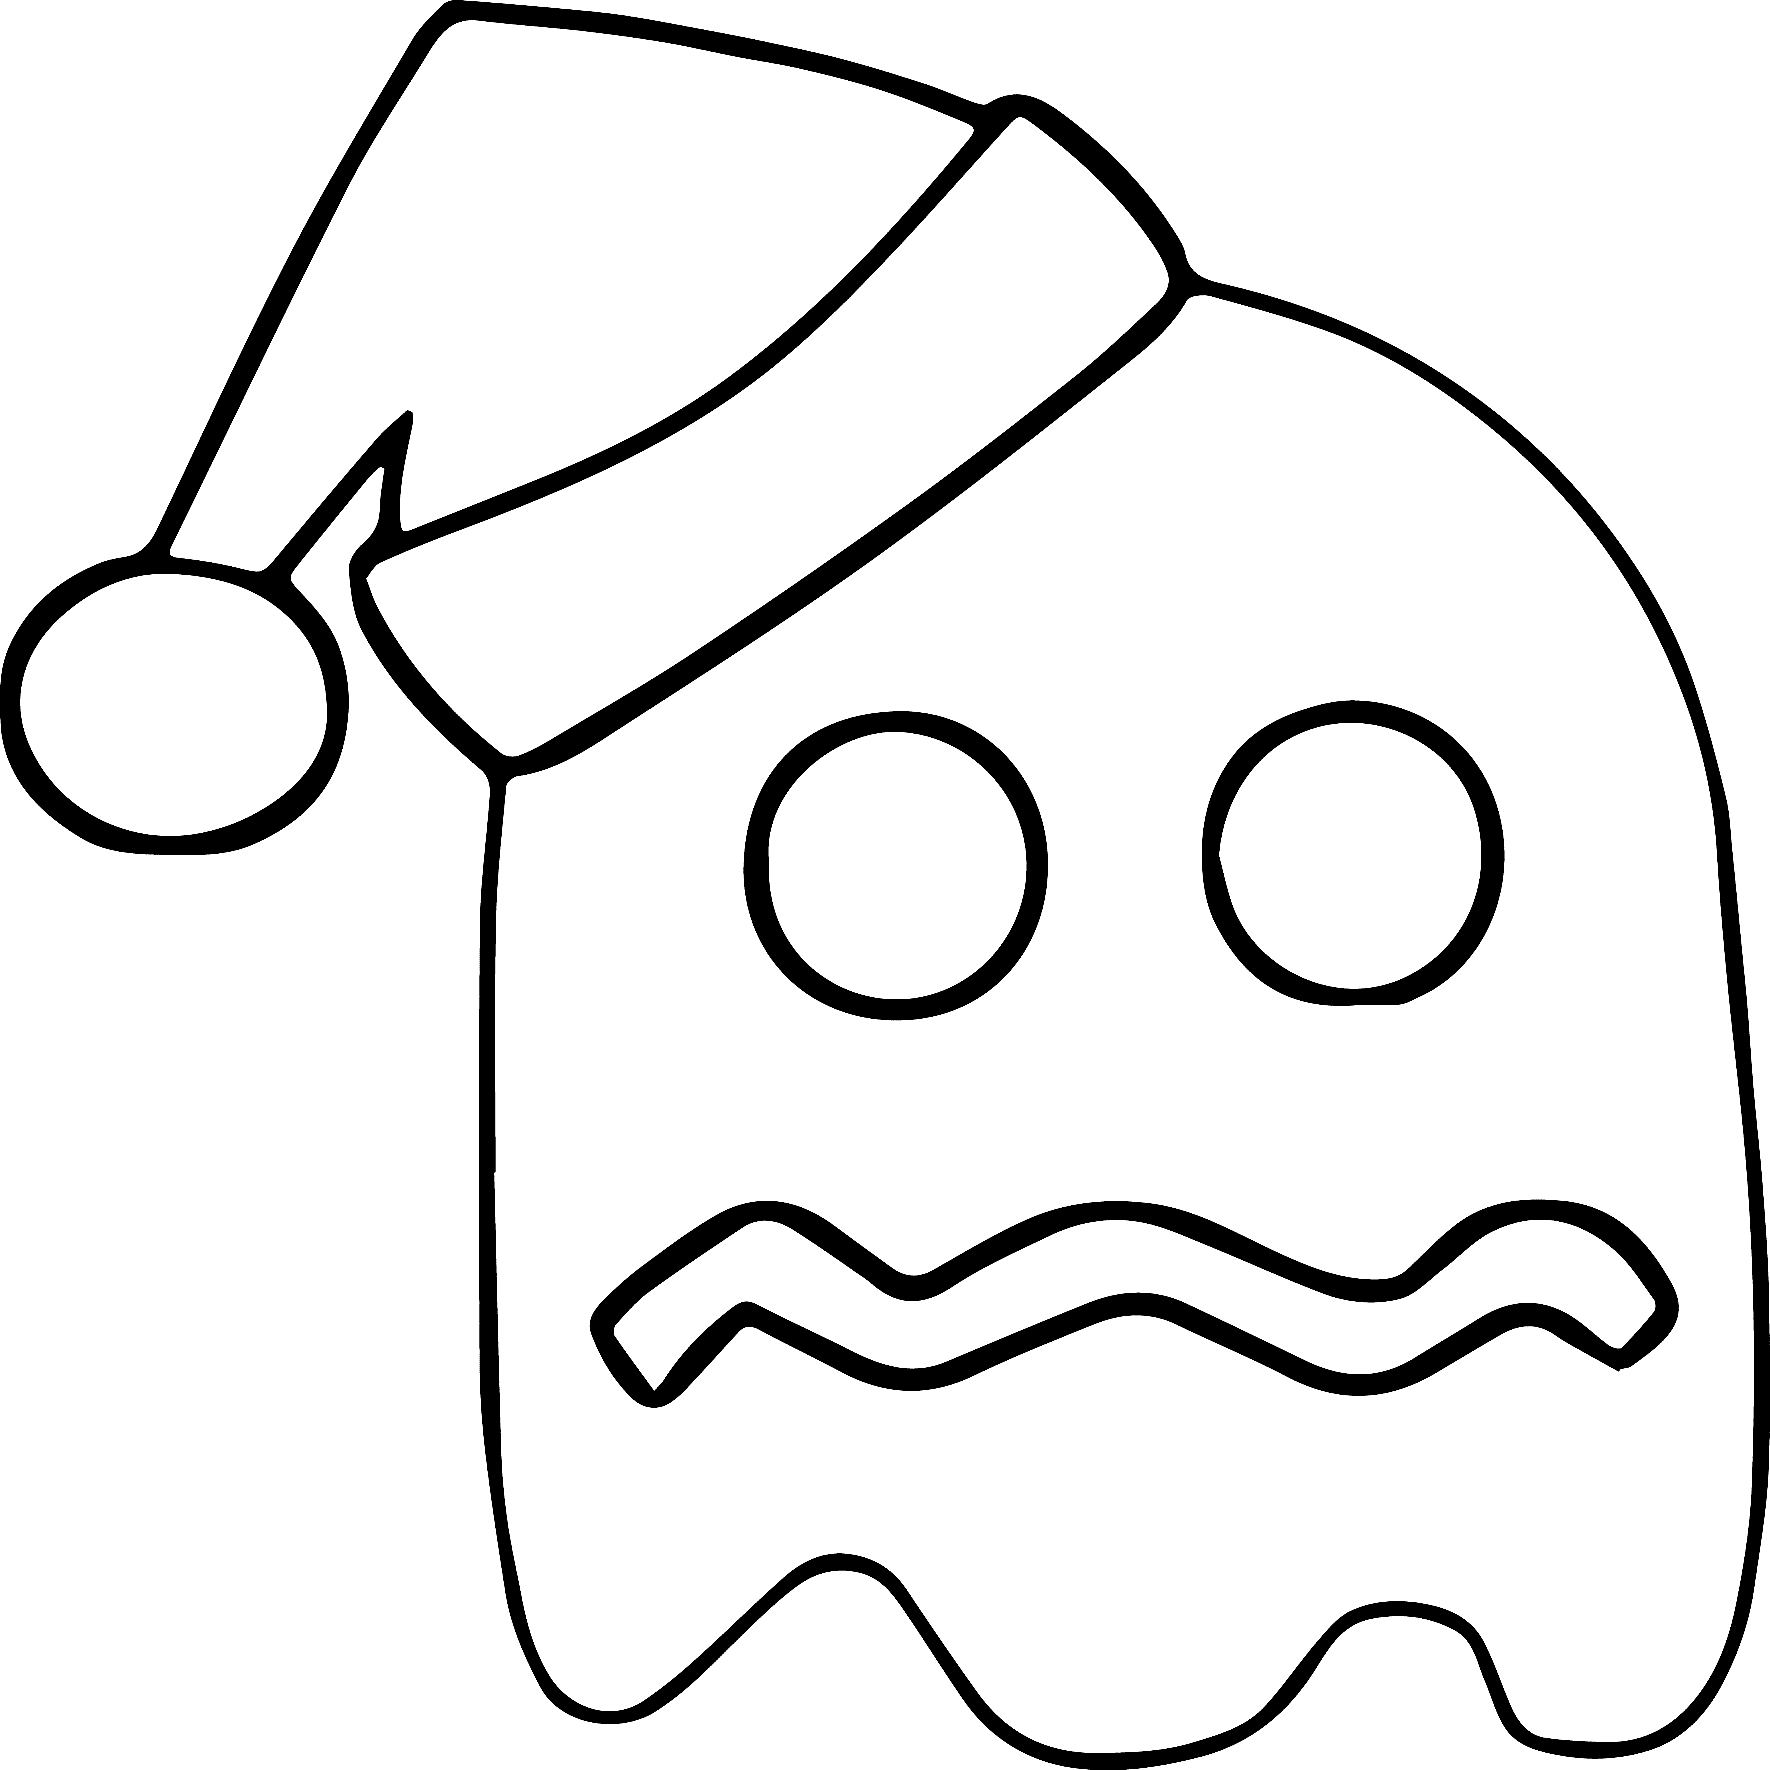 Fantasma de Natal do Pacman de Pac Man